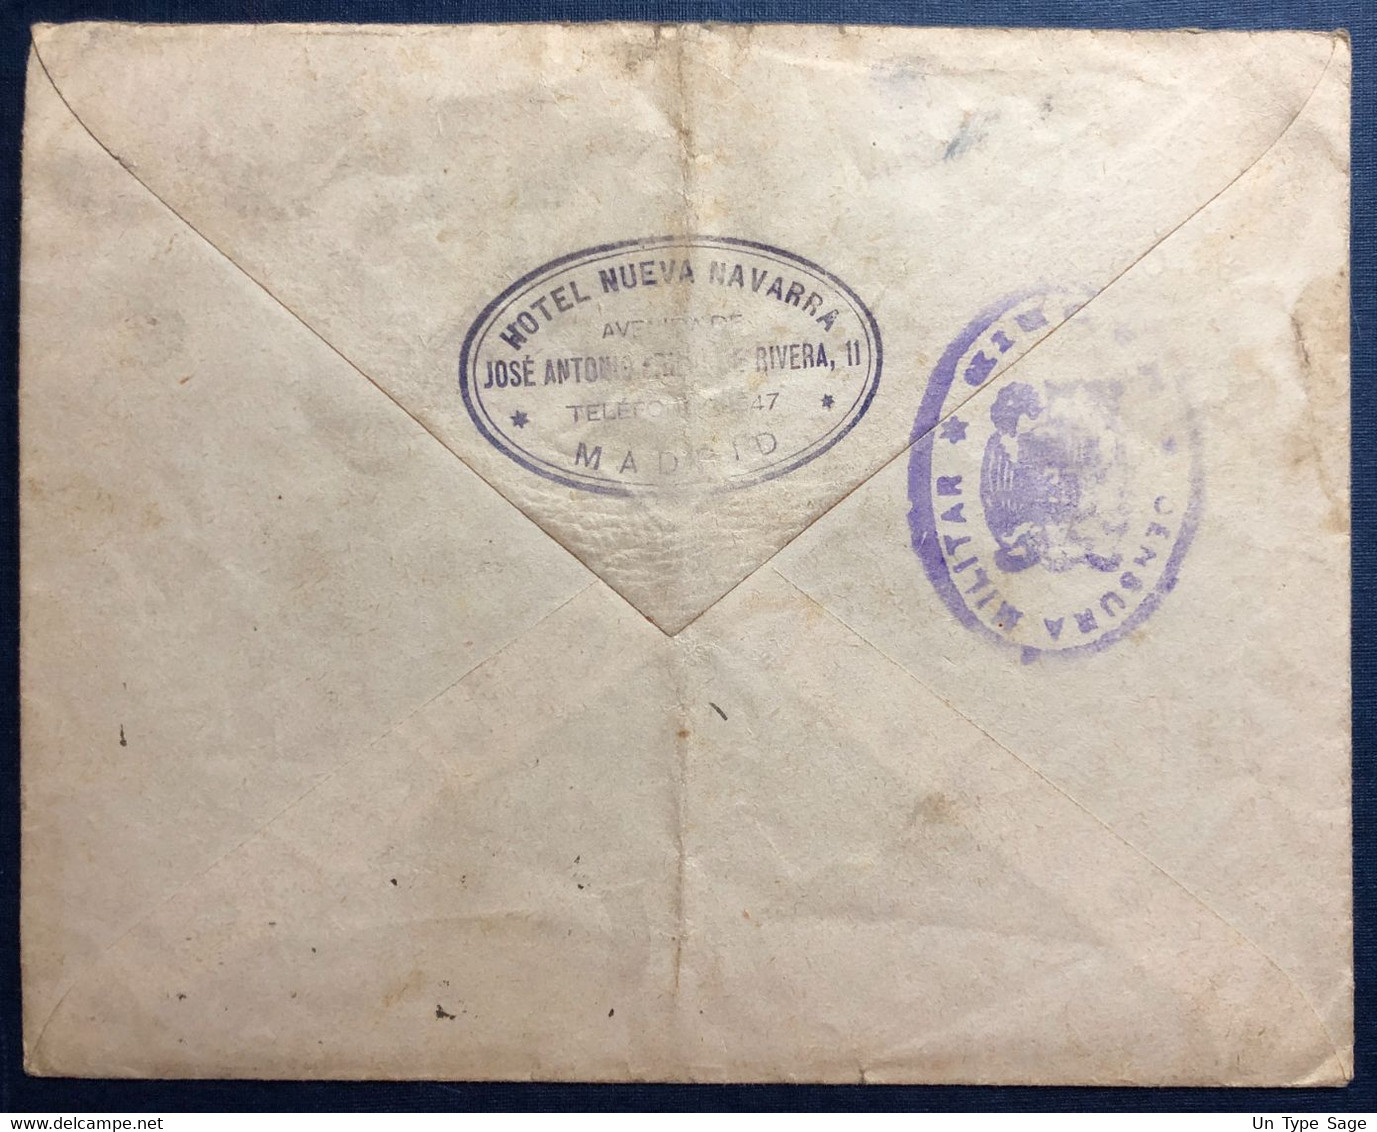 Espagne, Divers Sur Enveloppe De Madrid 8.12.1939 + Censure De Madrid, Pour La France - (B4210) - Briefe U. Dokumente